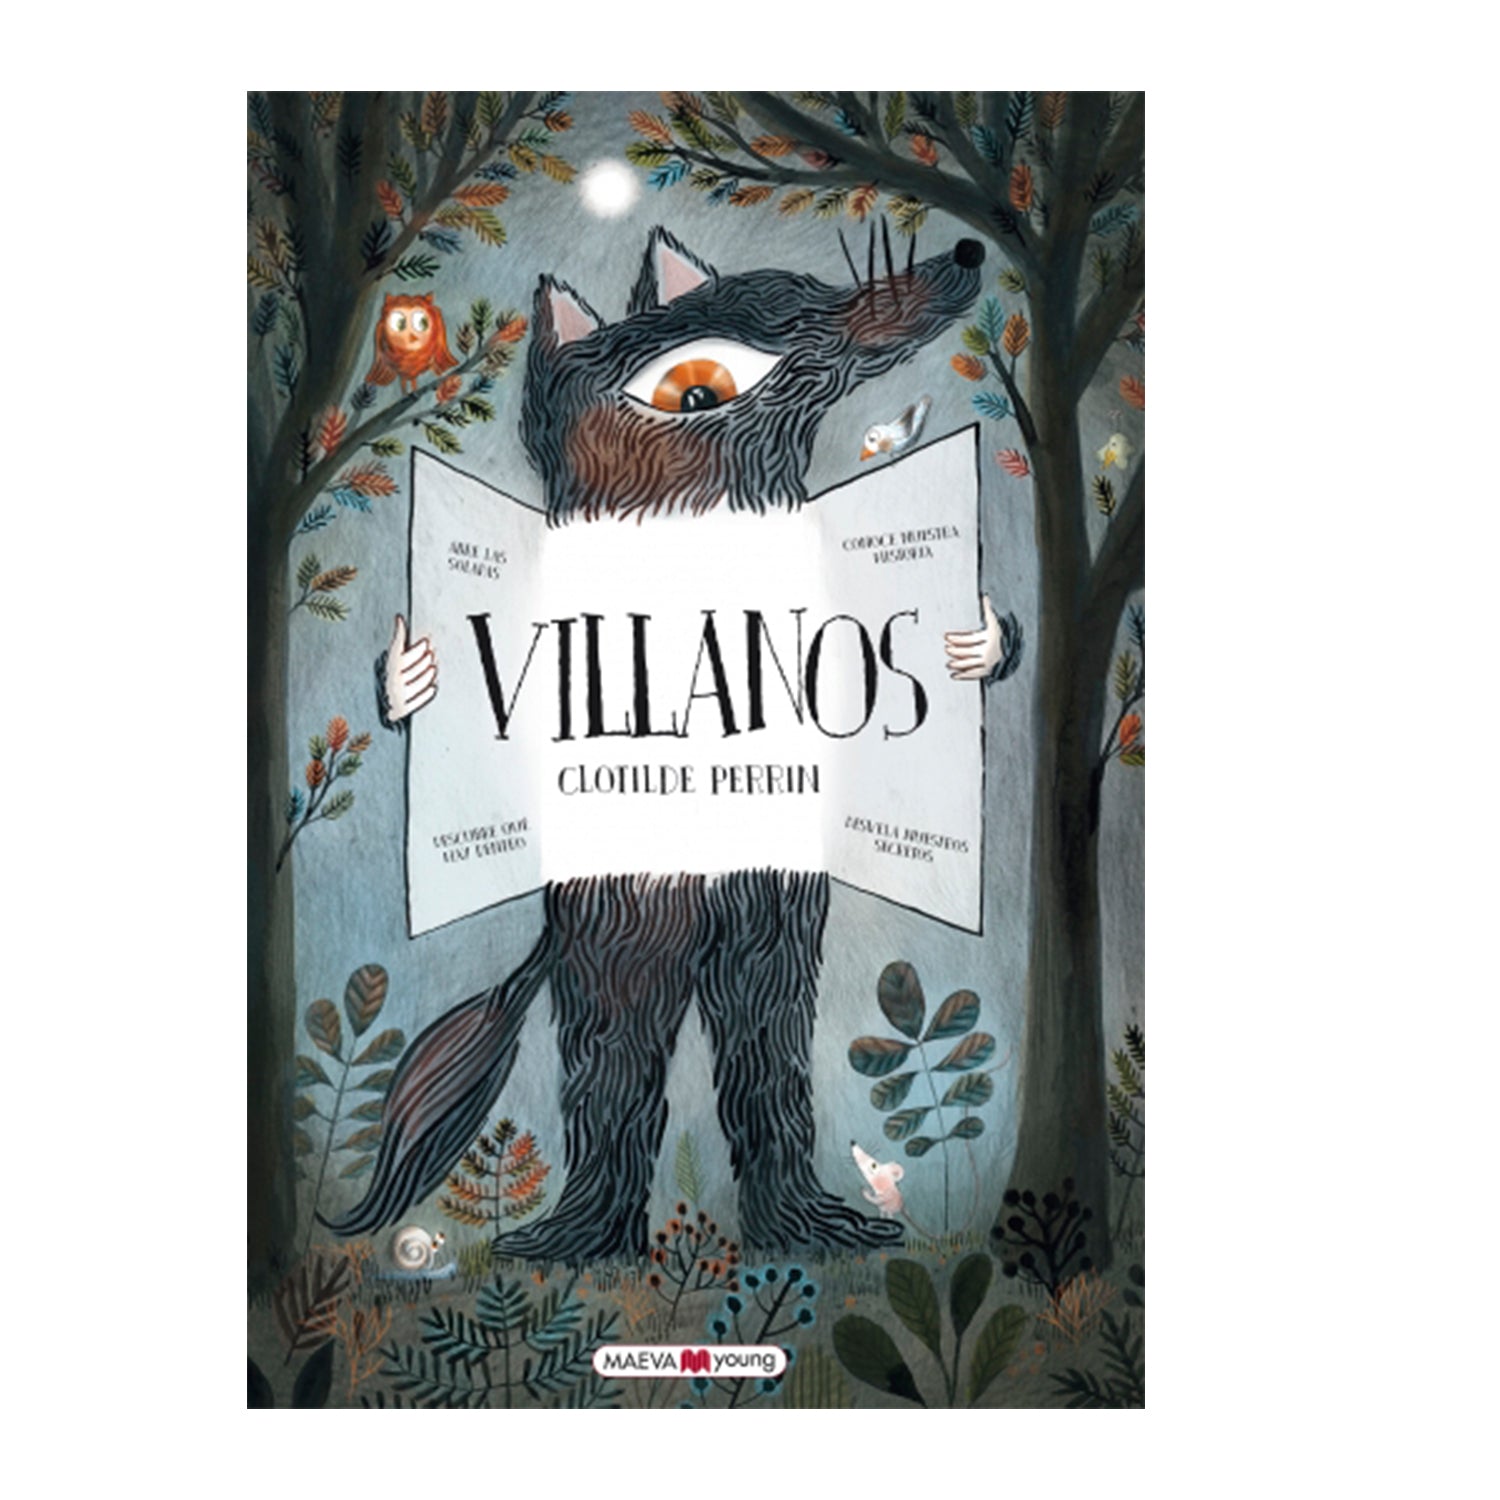 TODOS SOMOS VILLANOS – Librería Aurea Ediciones